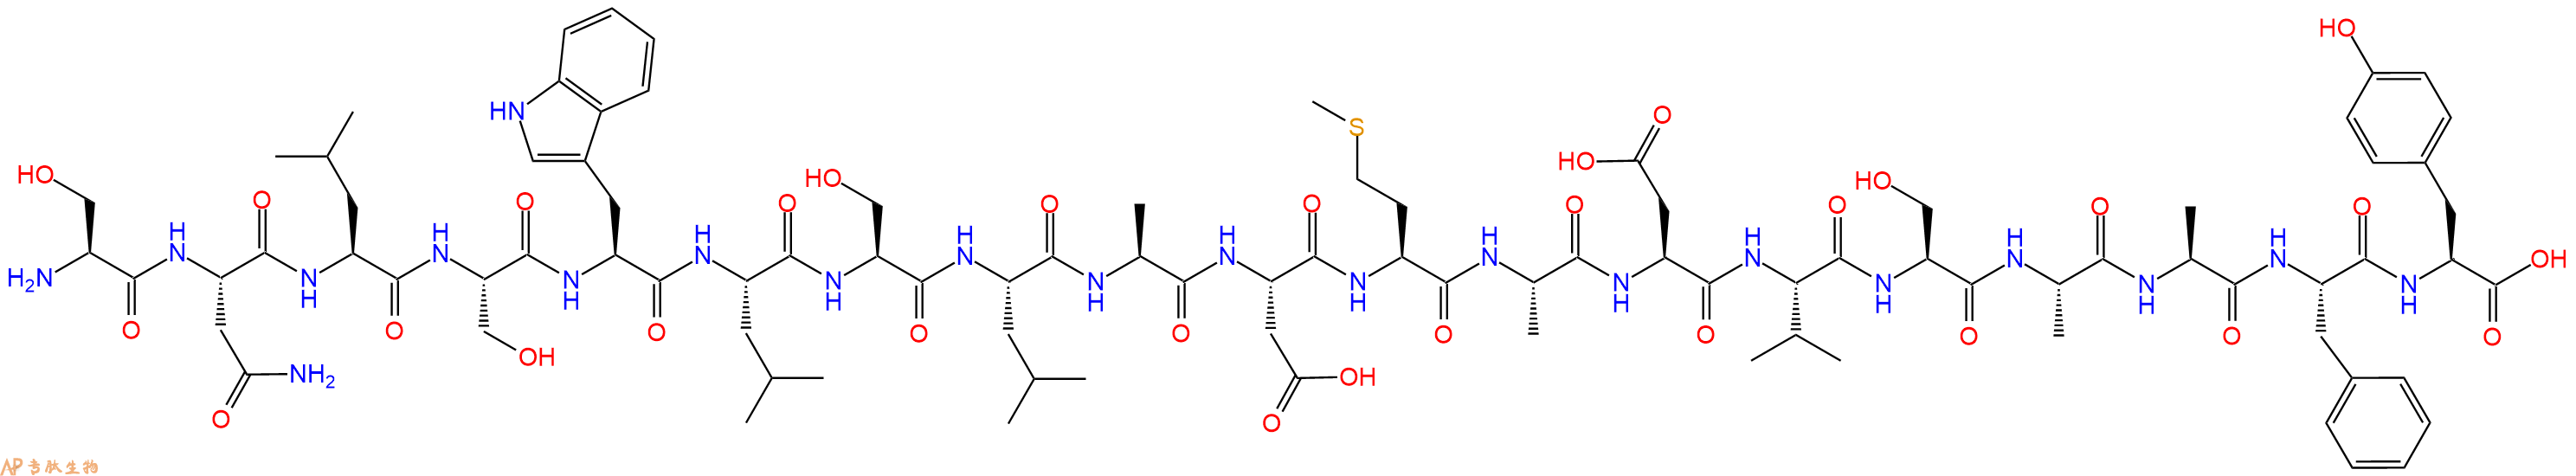 专肽生物产品H2N-Ser-Asn-Leu-Ser-Trp-Leu-Ser-Leu-Ala-Asp-Met-Al